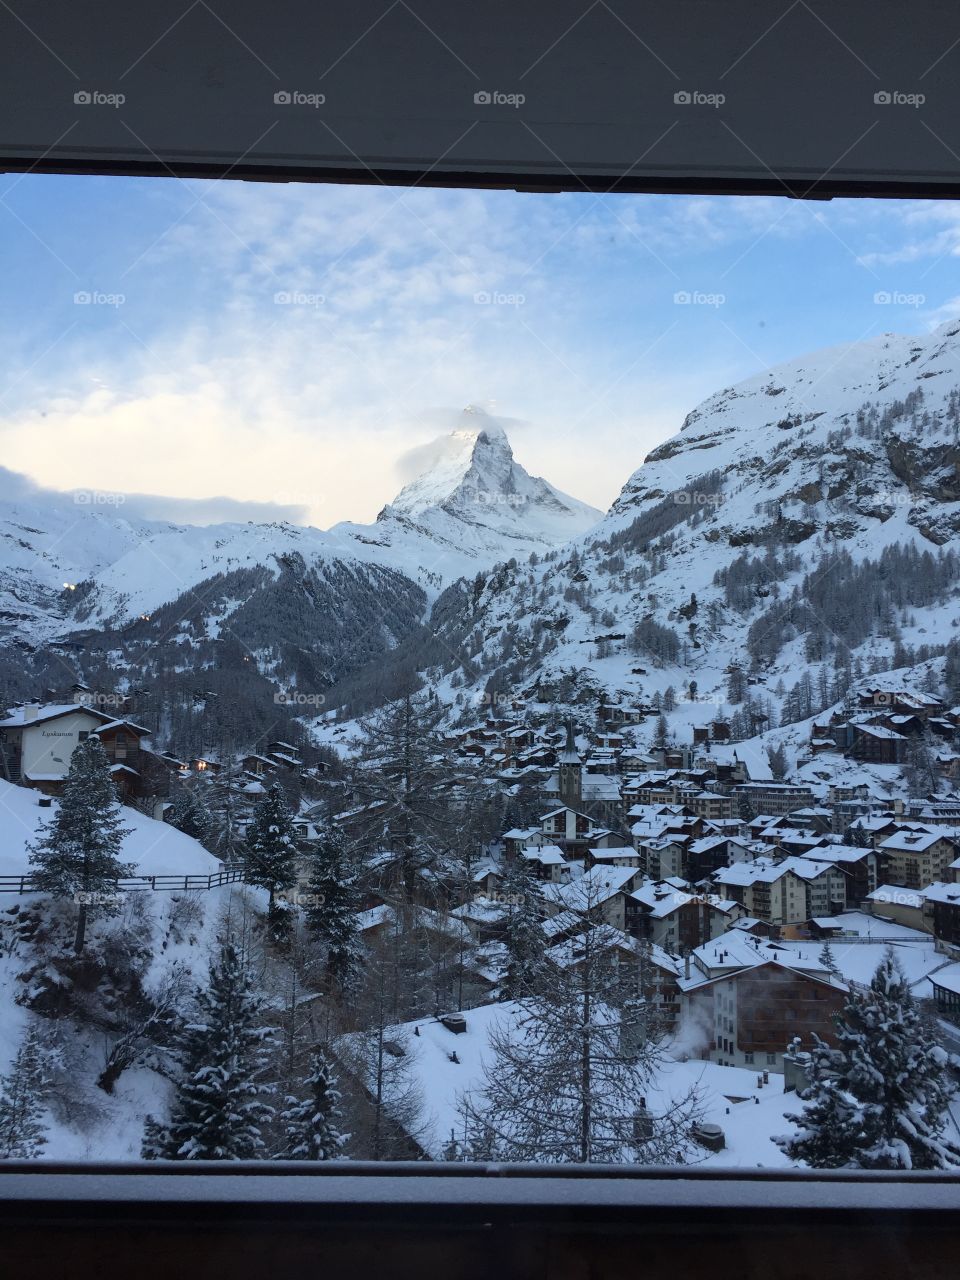 The Matterhorn, Switzerland. Shot from outside my hotel window